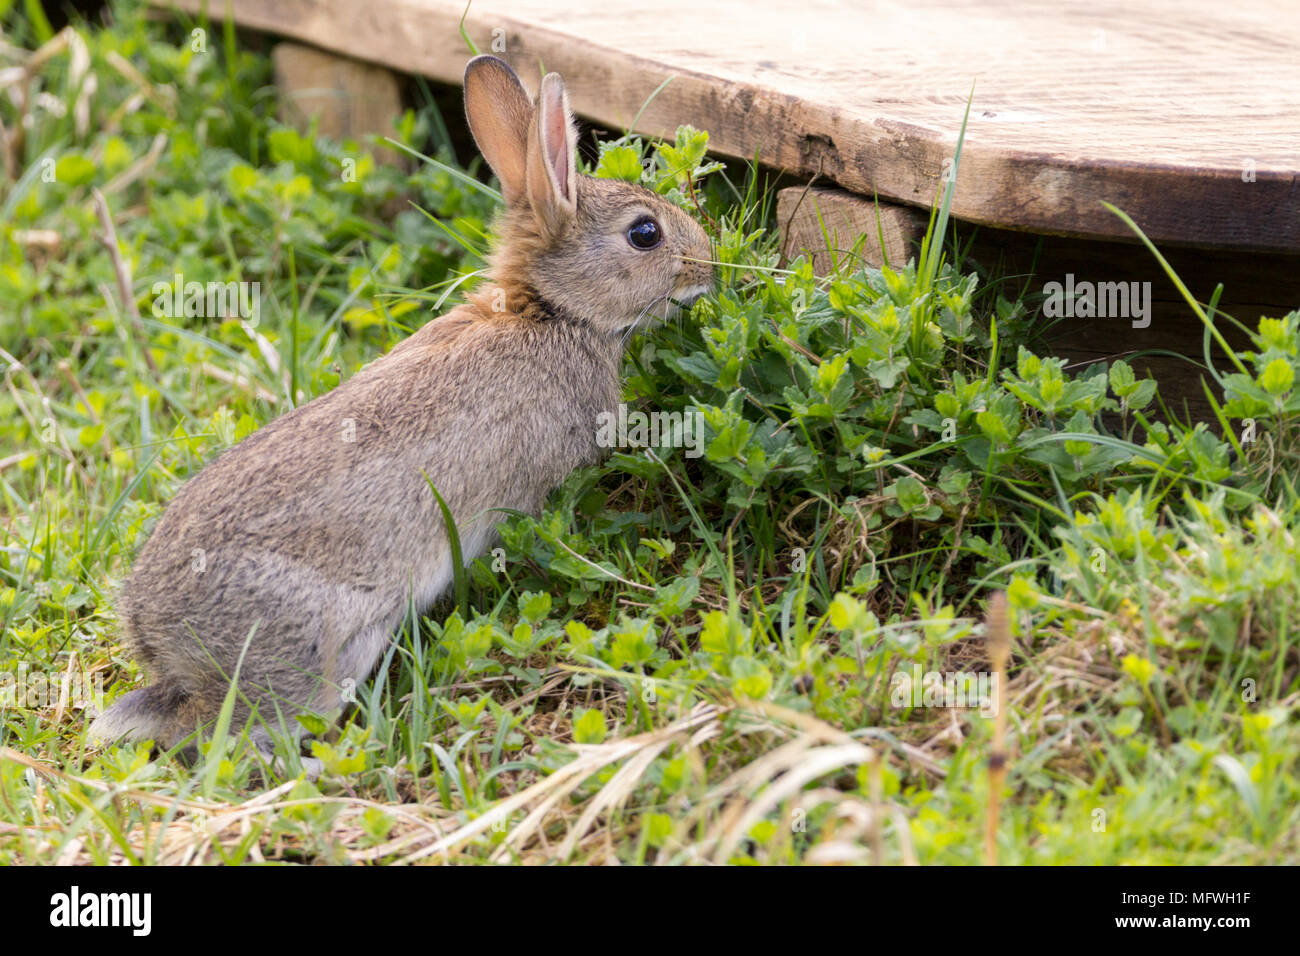 Jeune lapin de printemps de manger la végétation près des jeux à Pulborogh brooks réserve naturelle. Oryctolagus cunniculus sont une espèce introduite au moyen âge. Banque D'Images